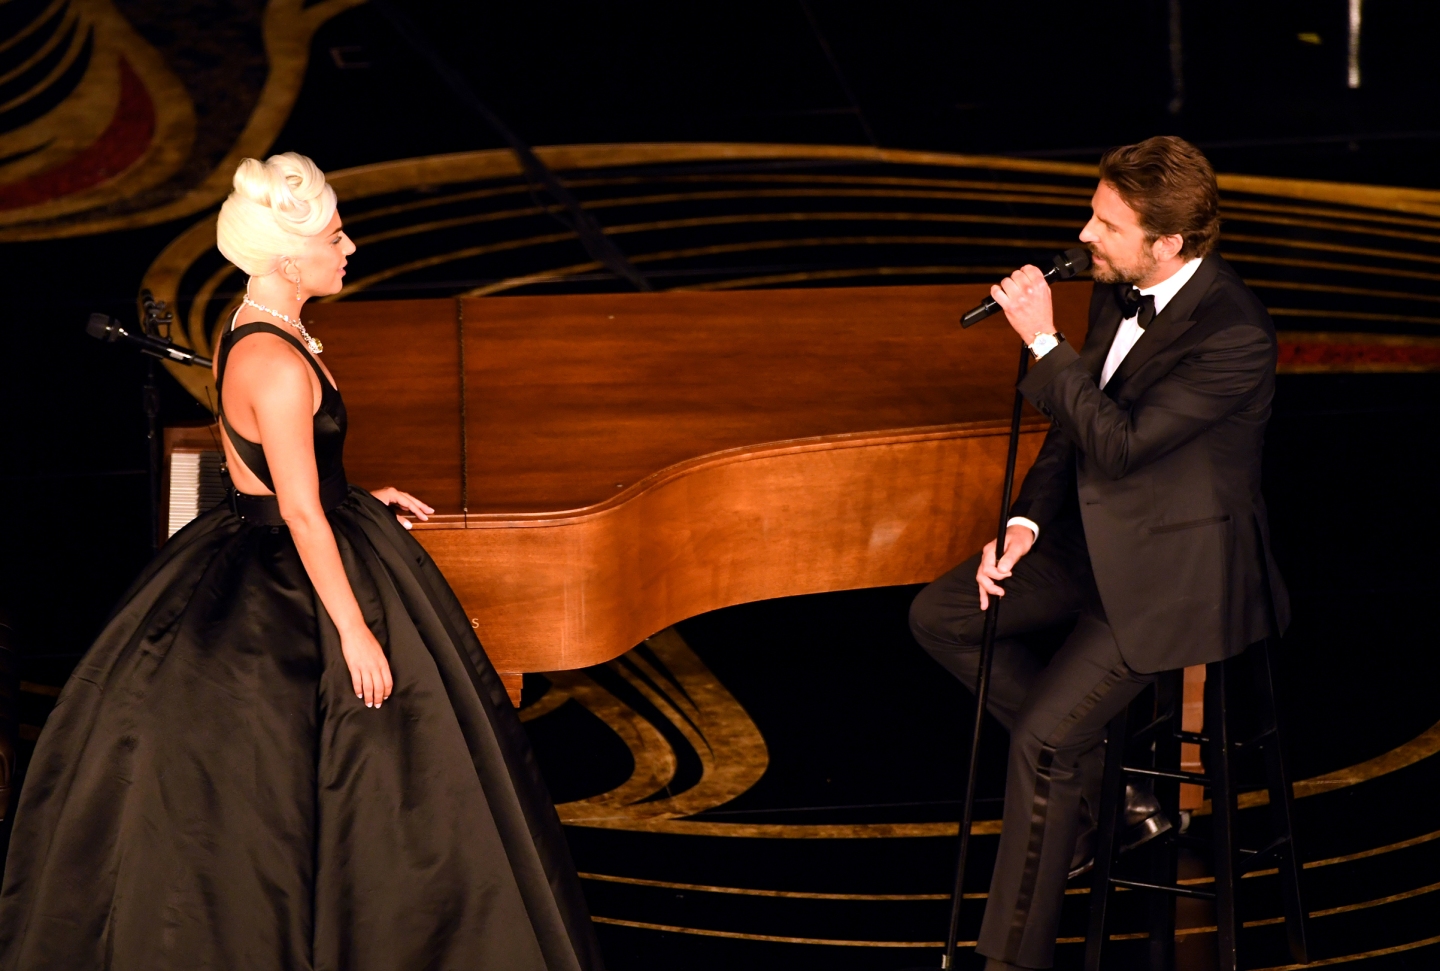 WATCH: 'Shallow' - Lady Gaga & Bradley Cooper (Oscars)